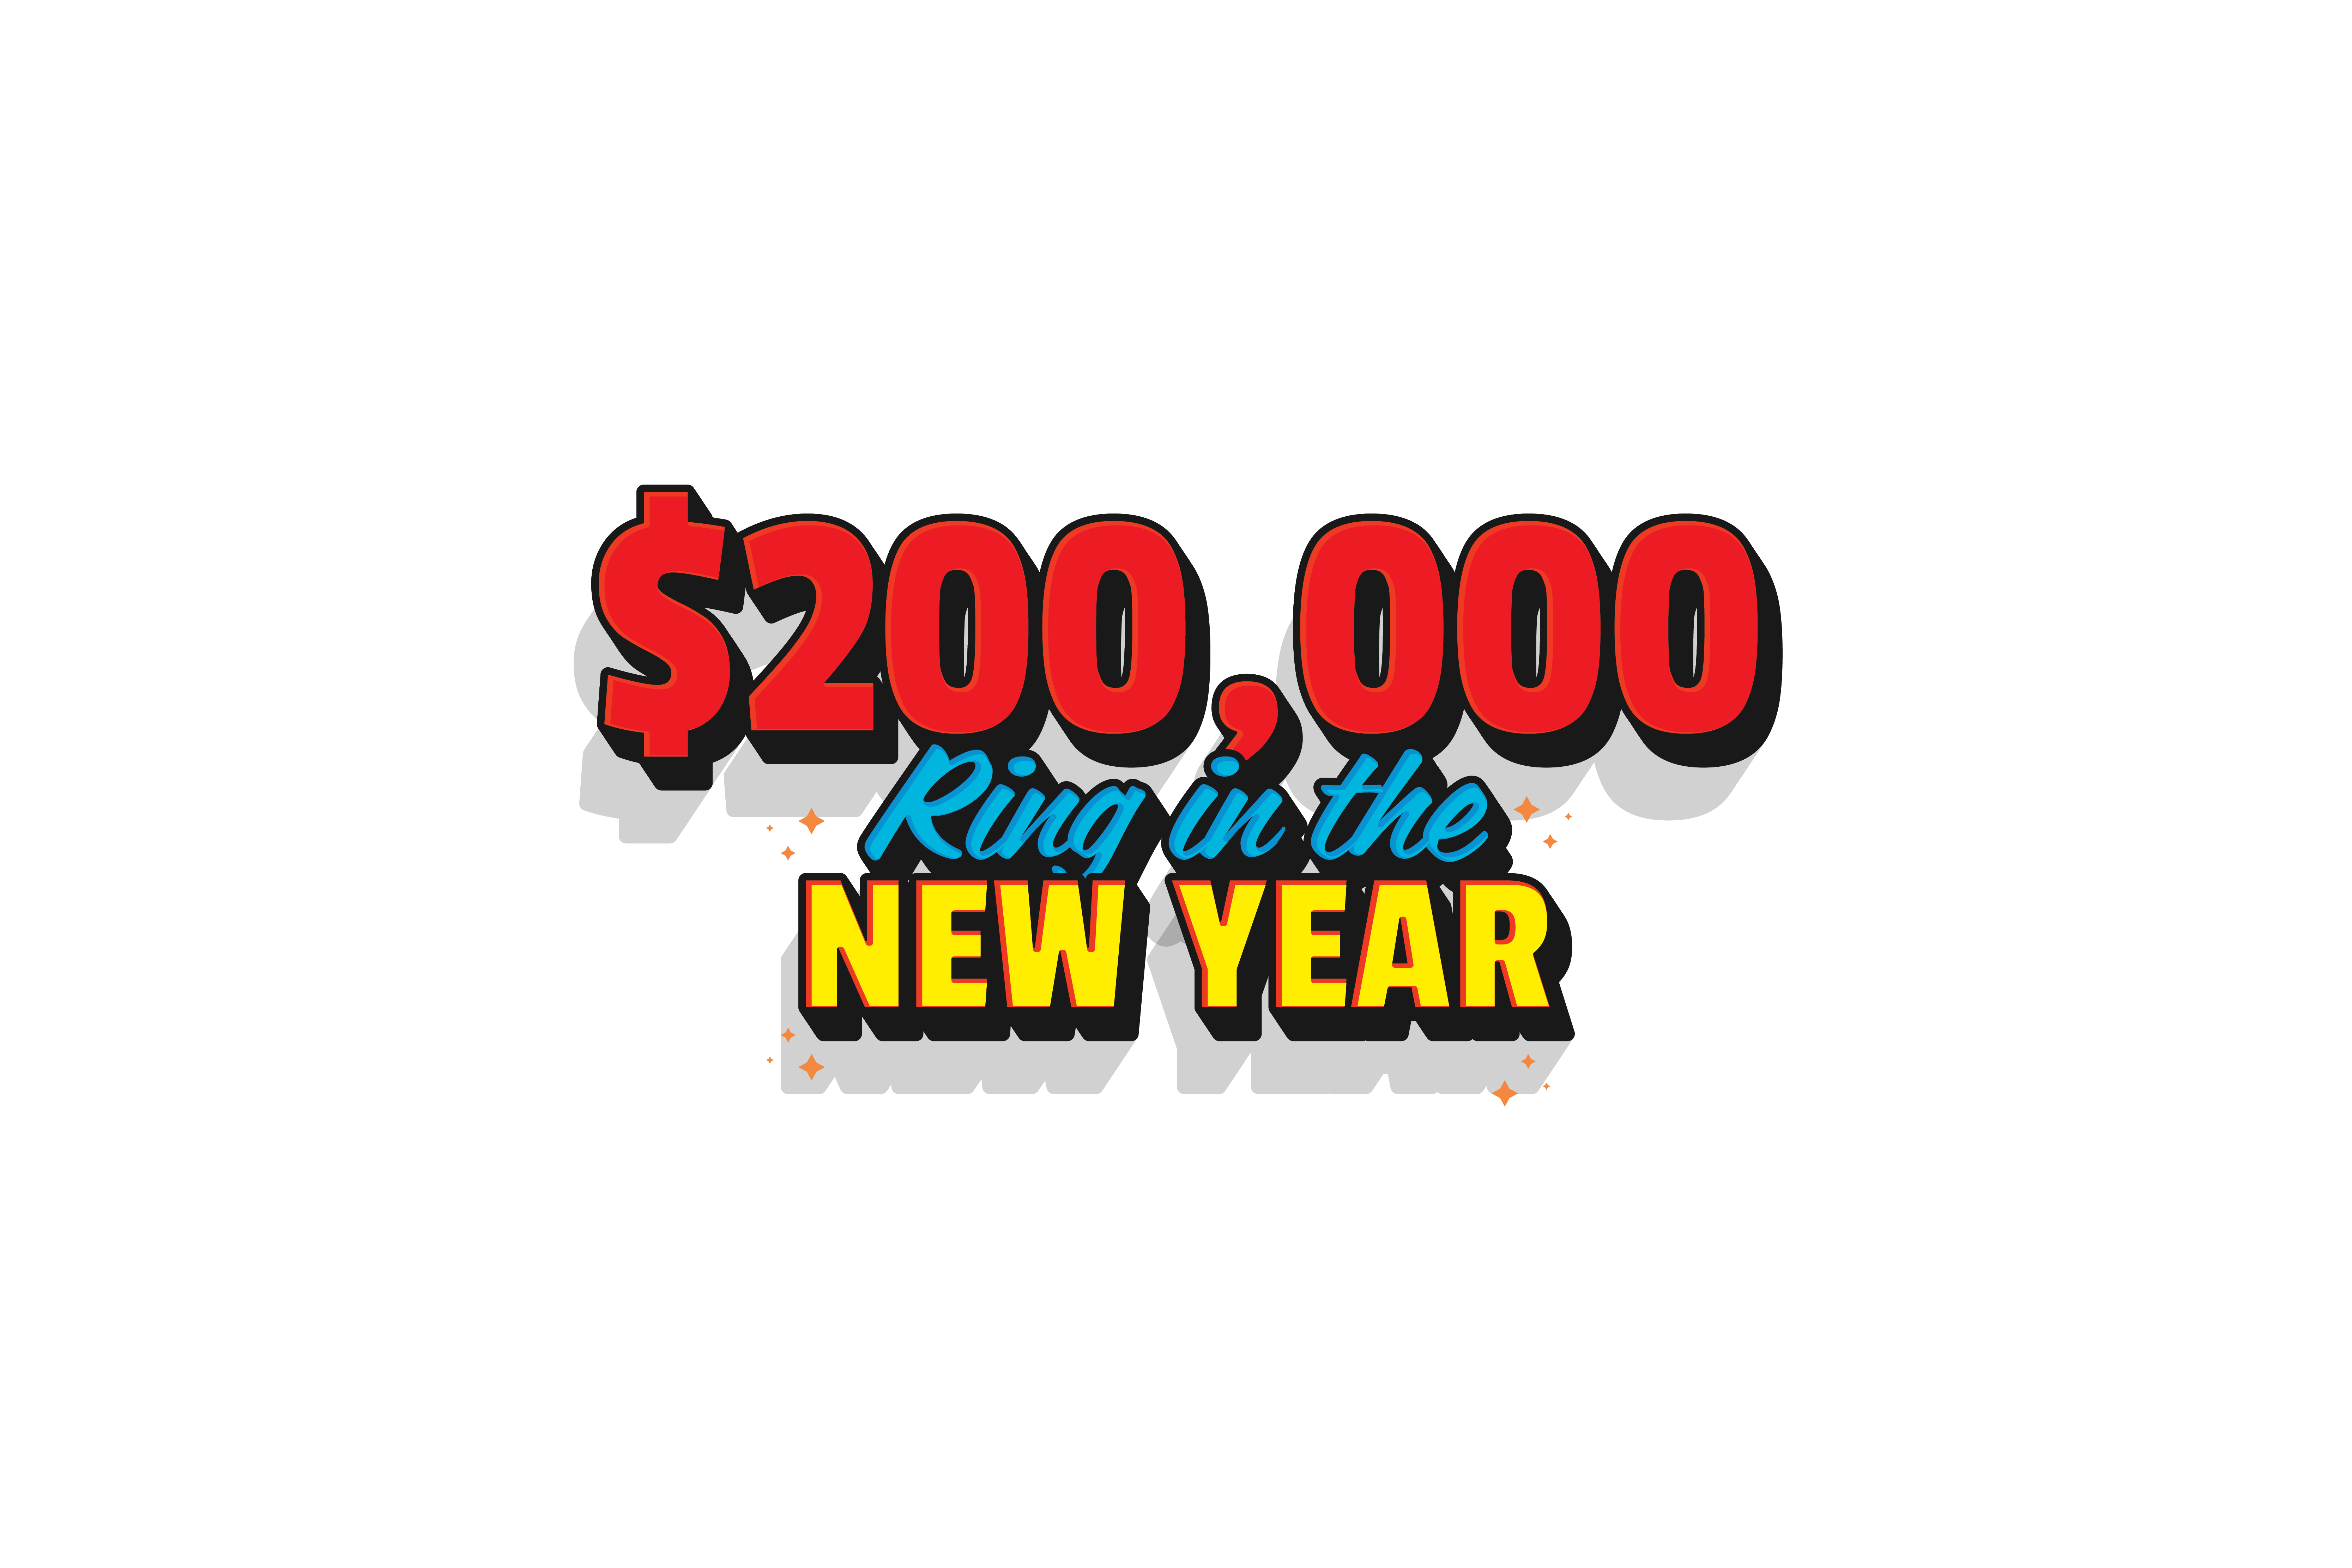 Quais são os benefícios mais comuns dos casinos online?, by Lotto Kings